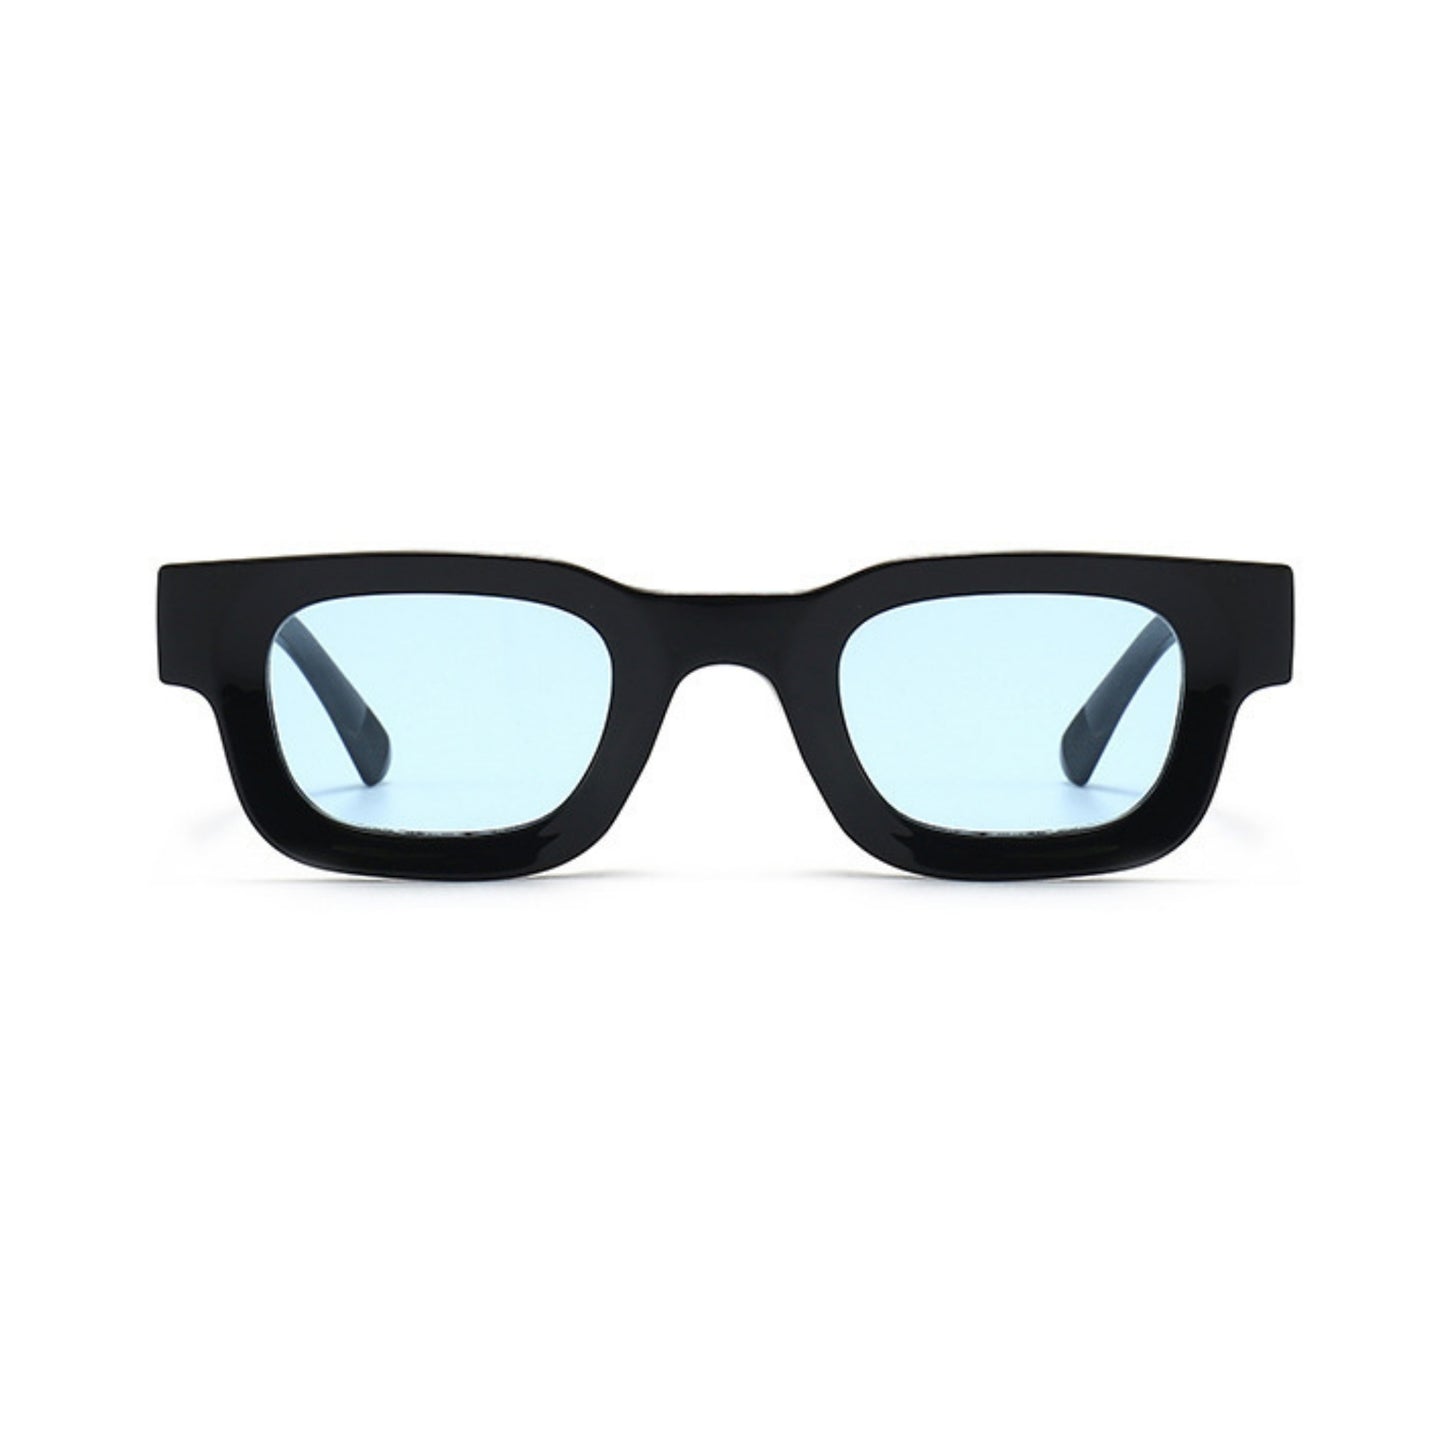 Τετράγωνα Γυαλιά ηλίου Taf από την Exposure Sunglasses με προστασία UV400 με μαύρο σκελετό και μπλε φακό.